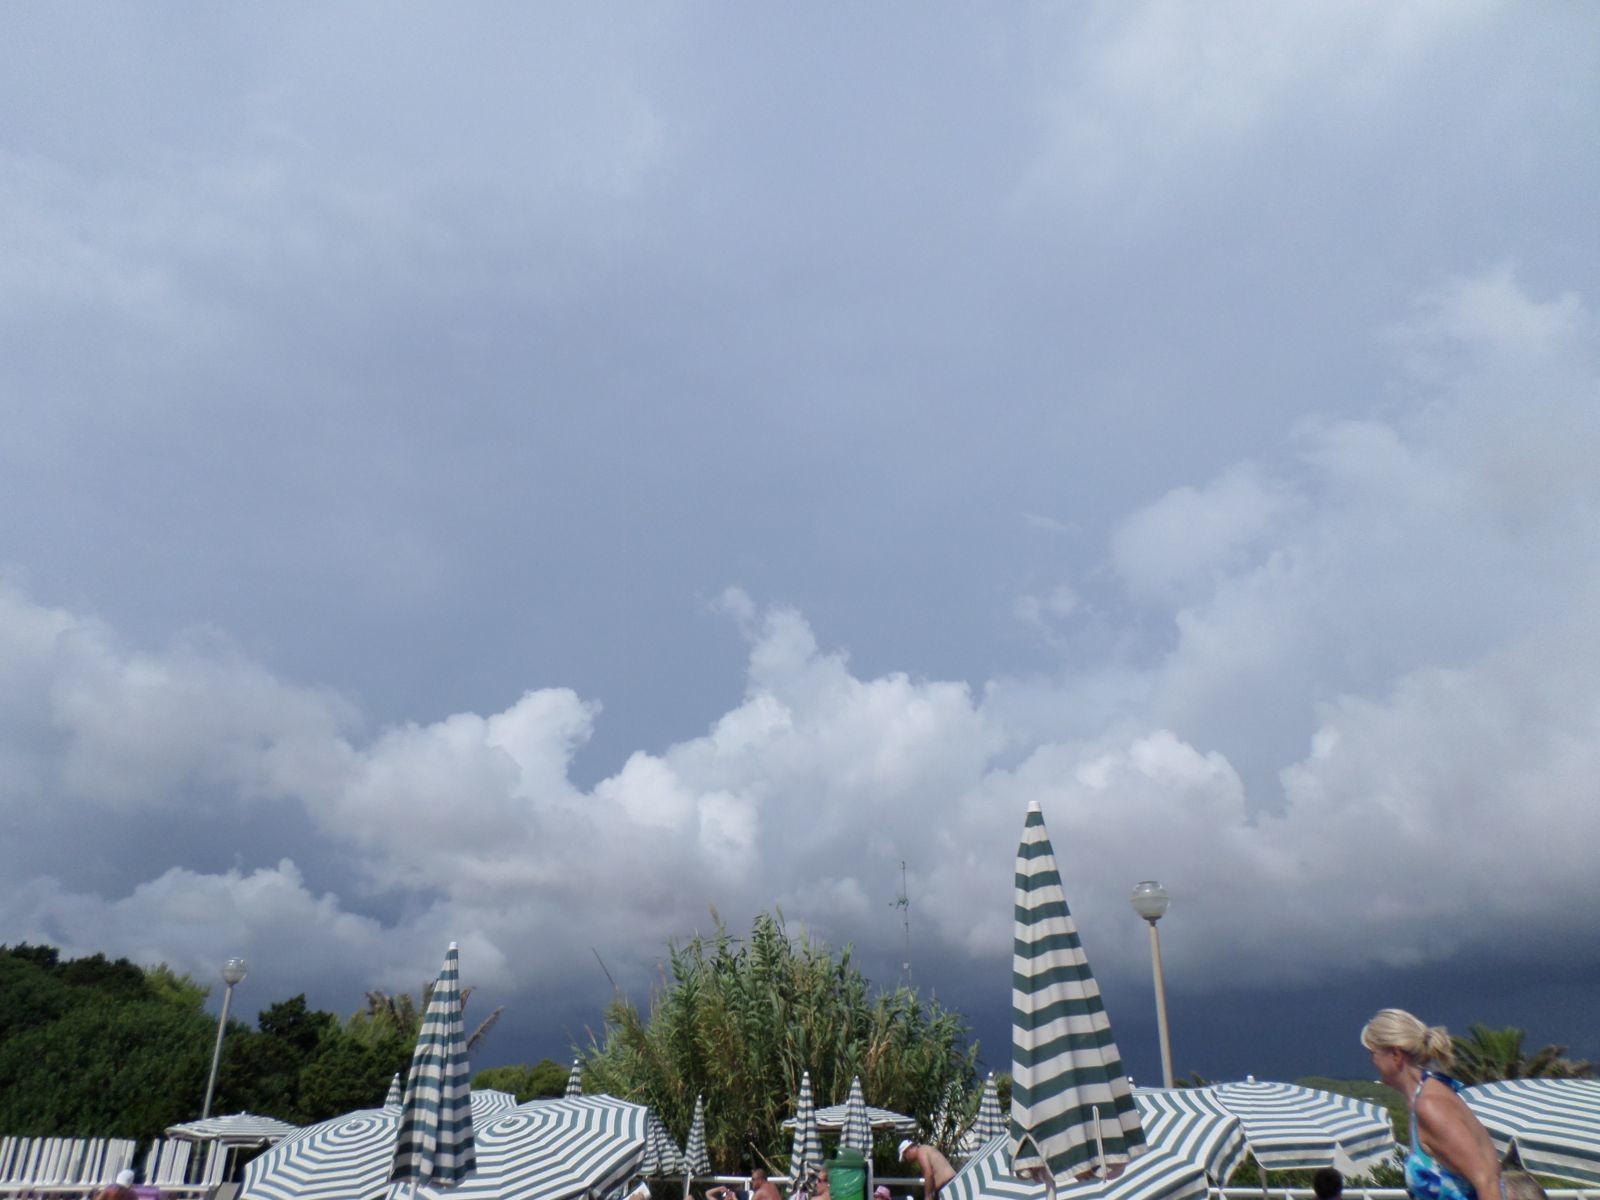 Fully developed severe thunderstorm, Ibiza Sept 2013